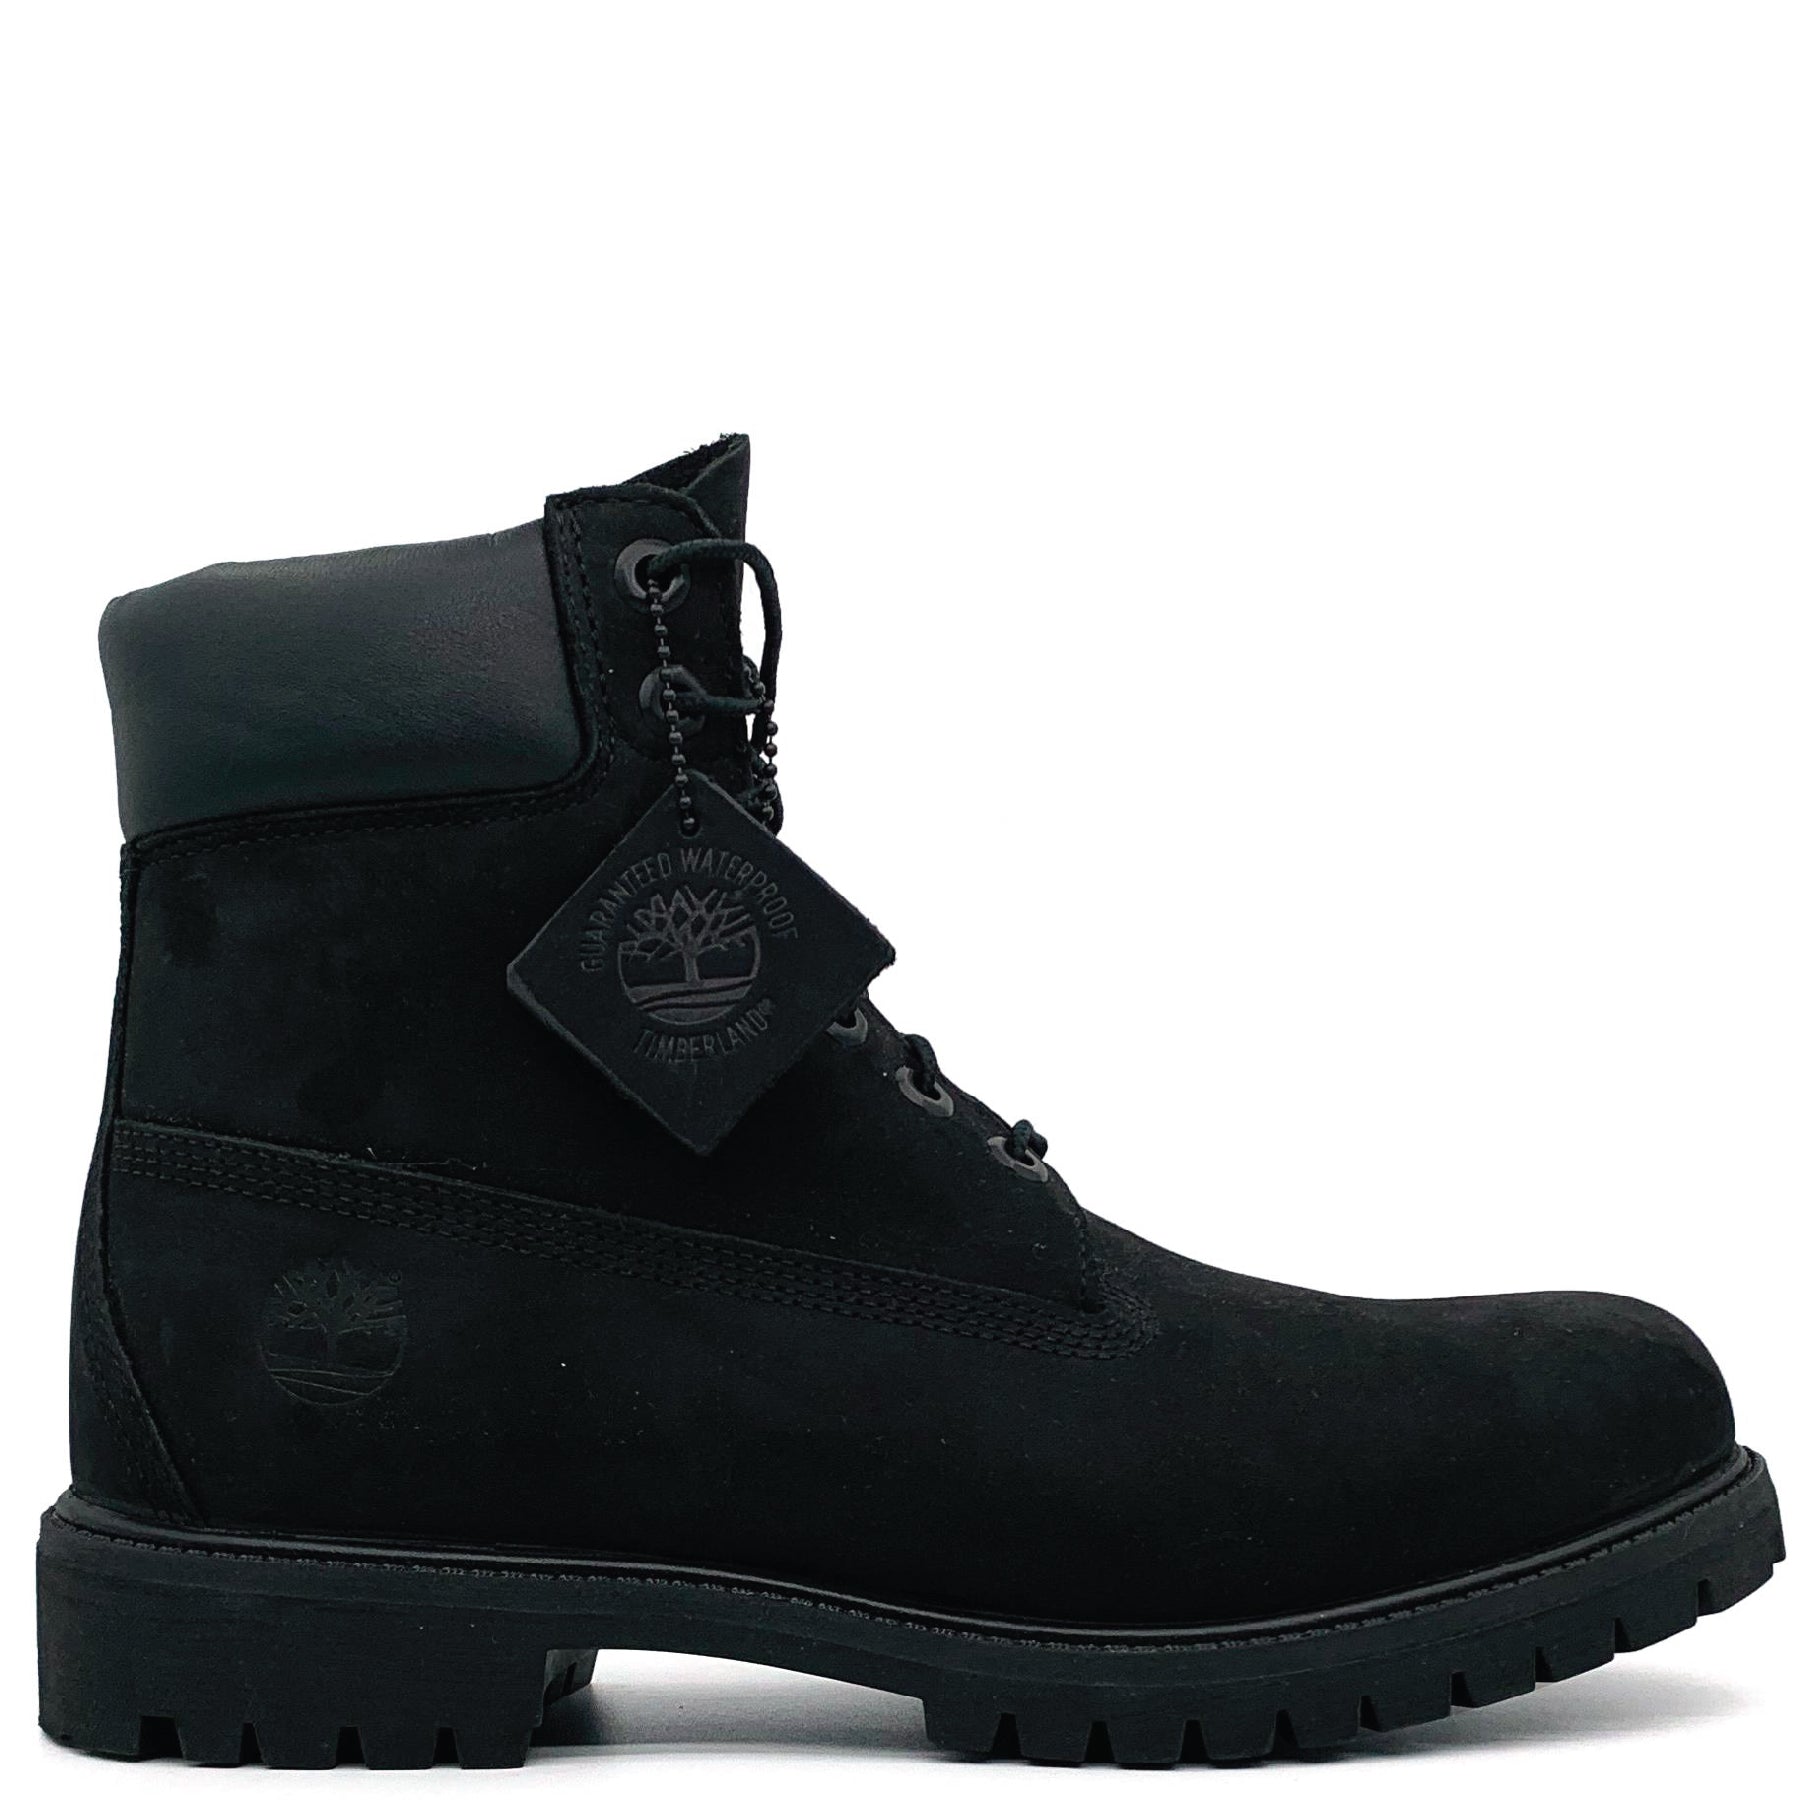 6" Premium Boot Black